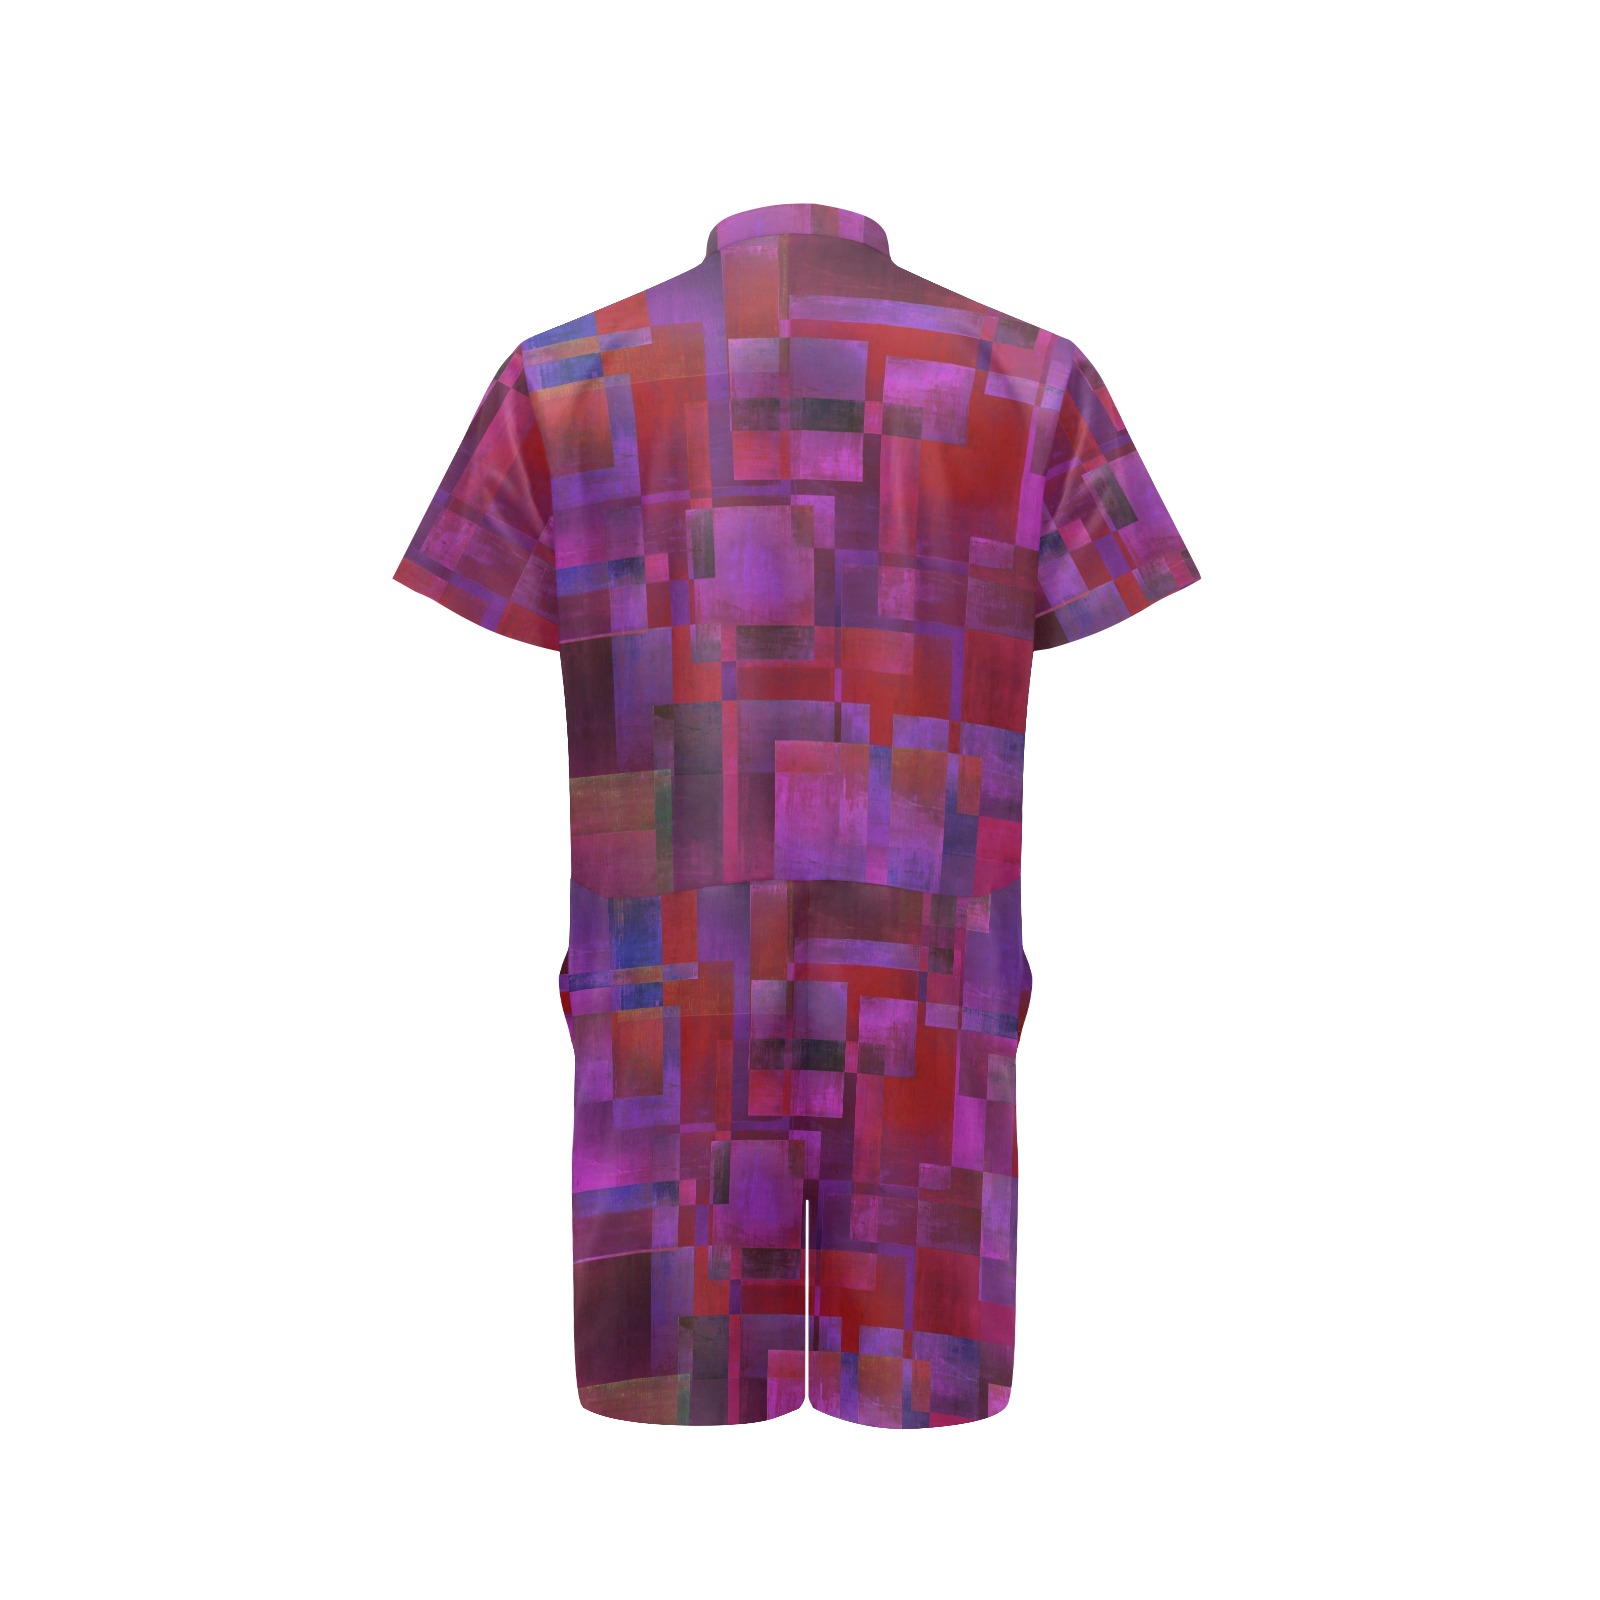 cubes purple Men's Short Sleeve Jumpsuit